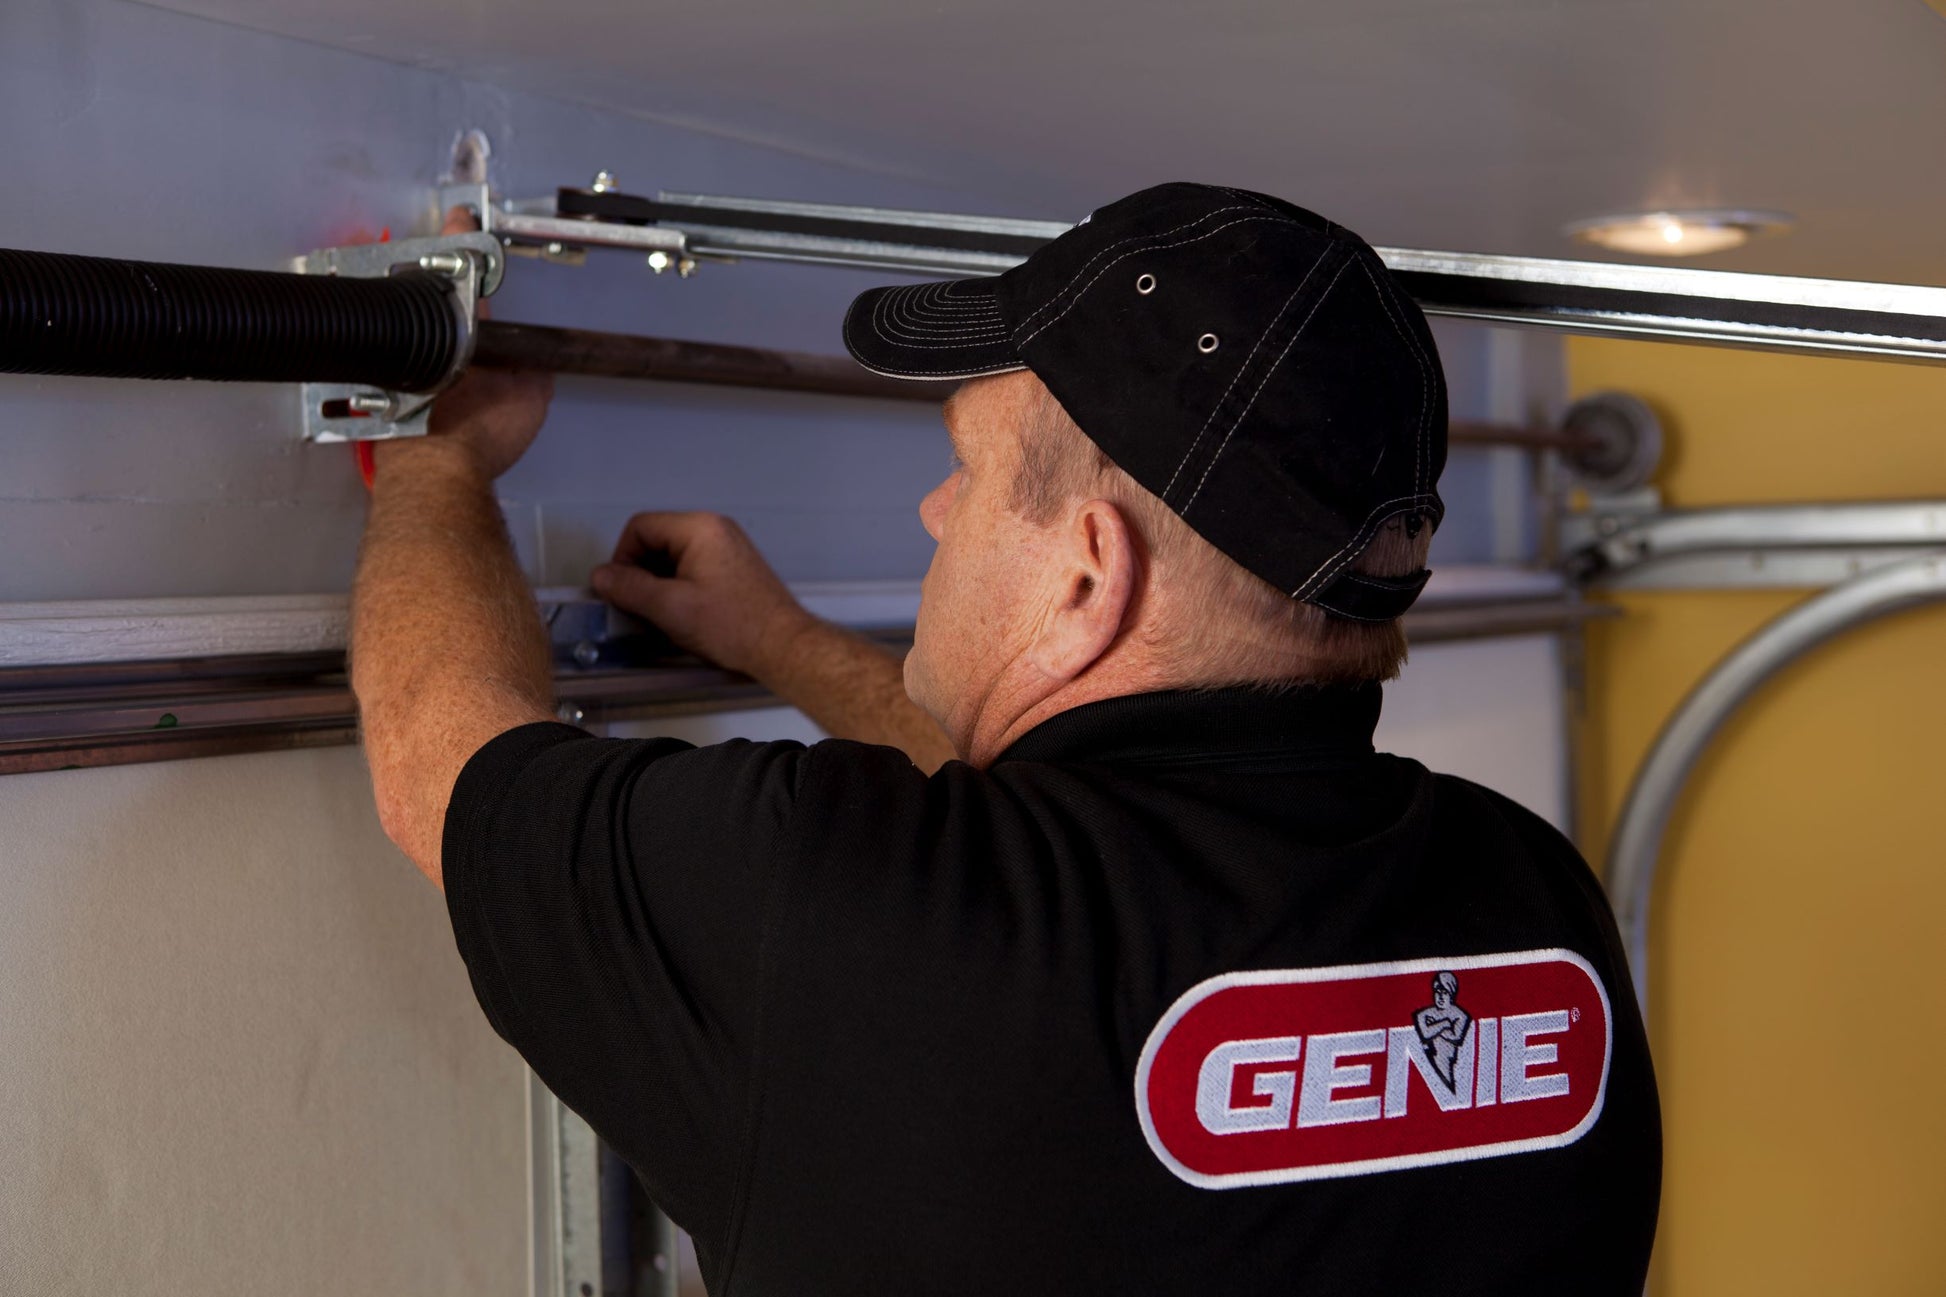 Genie garage door opener professional installation